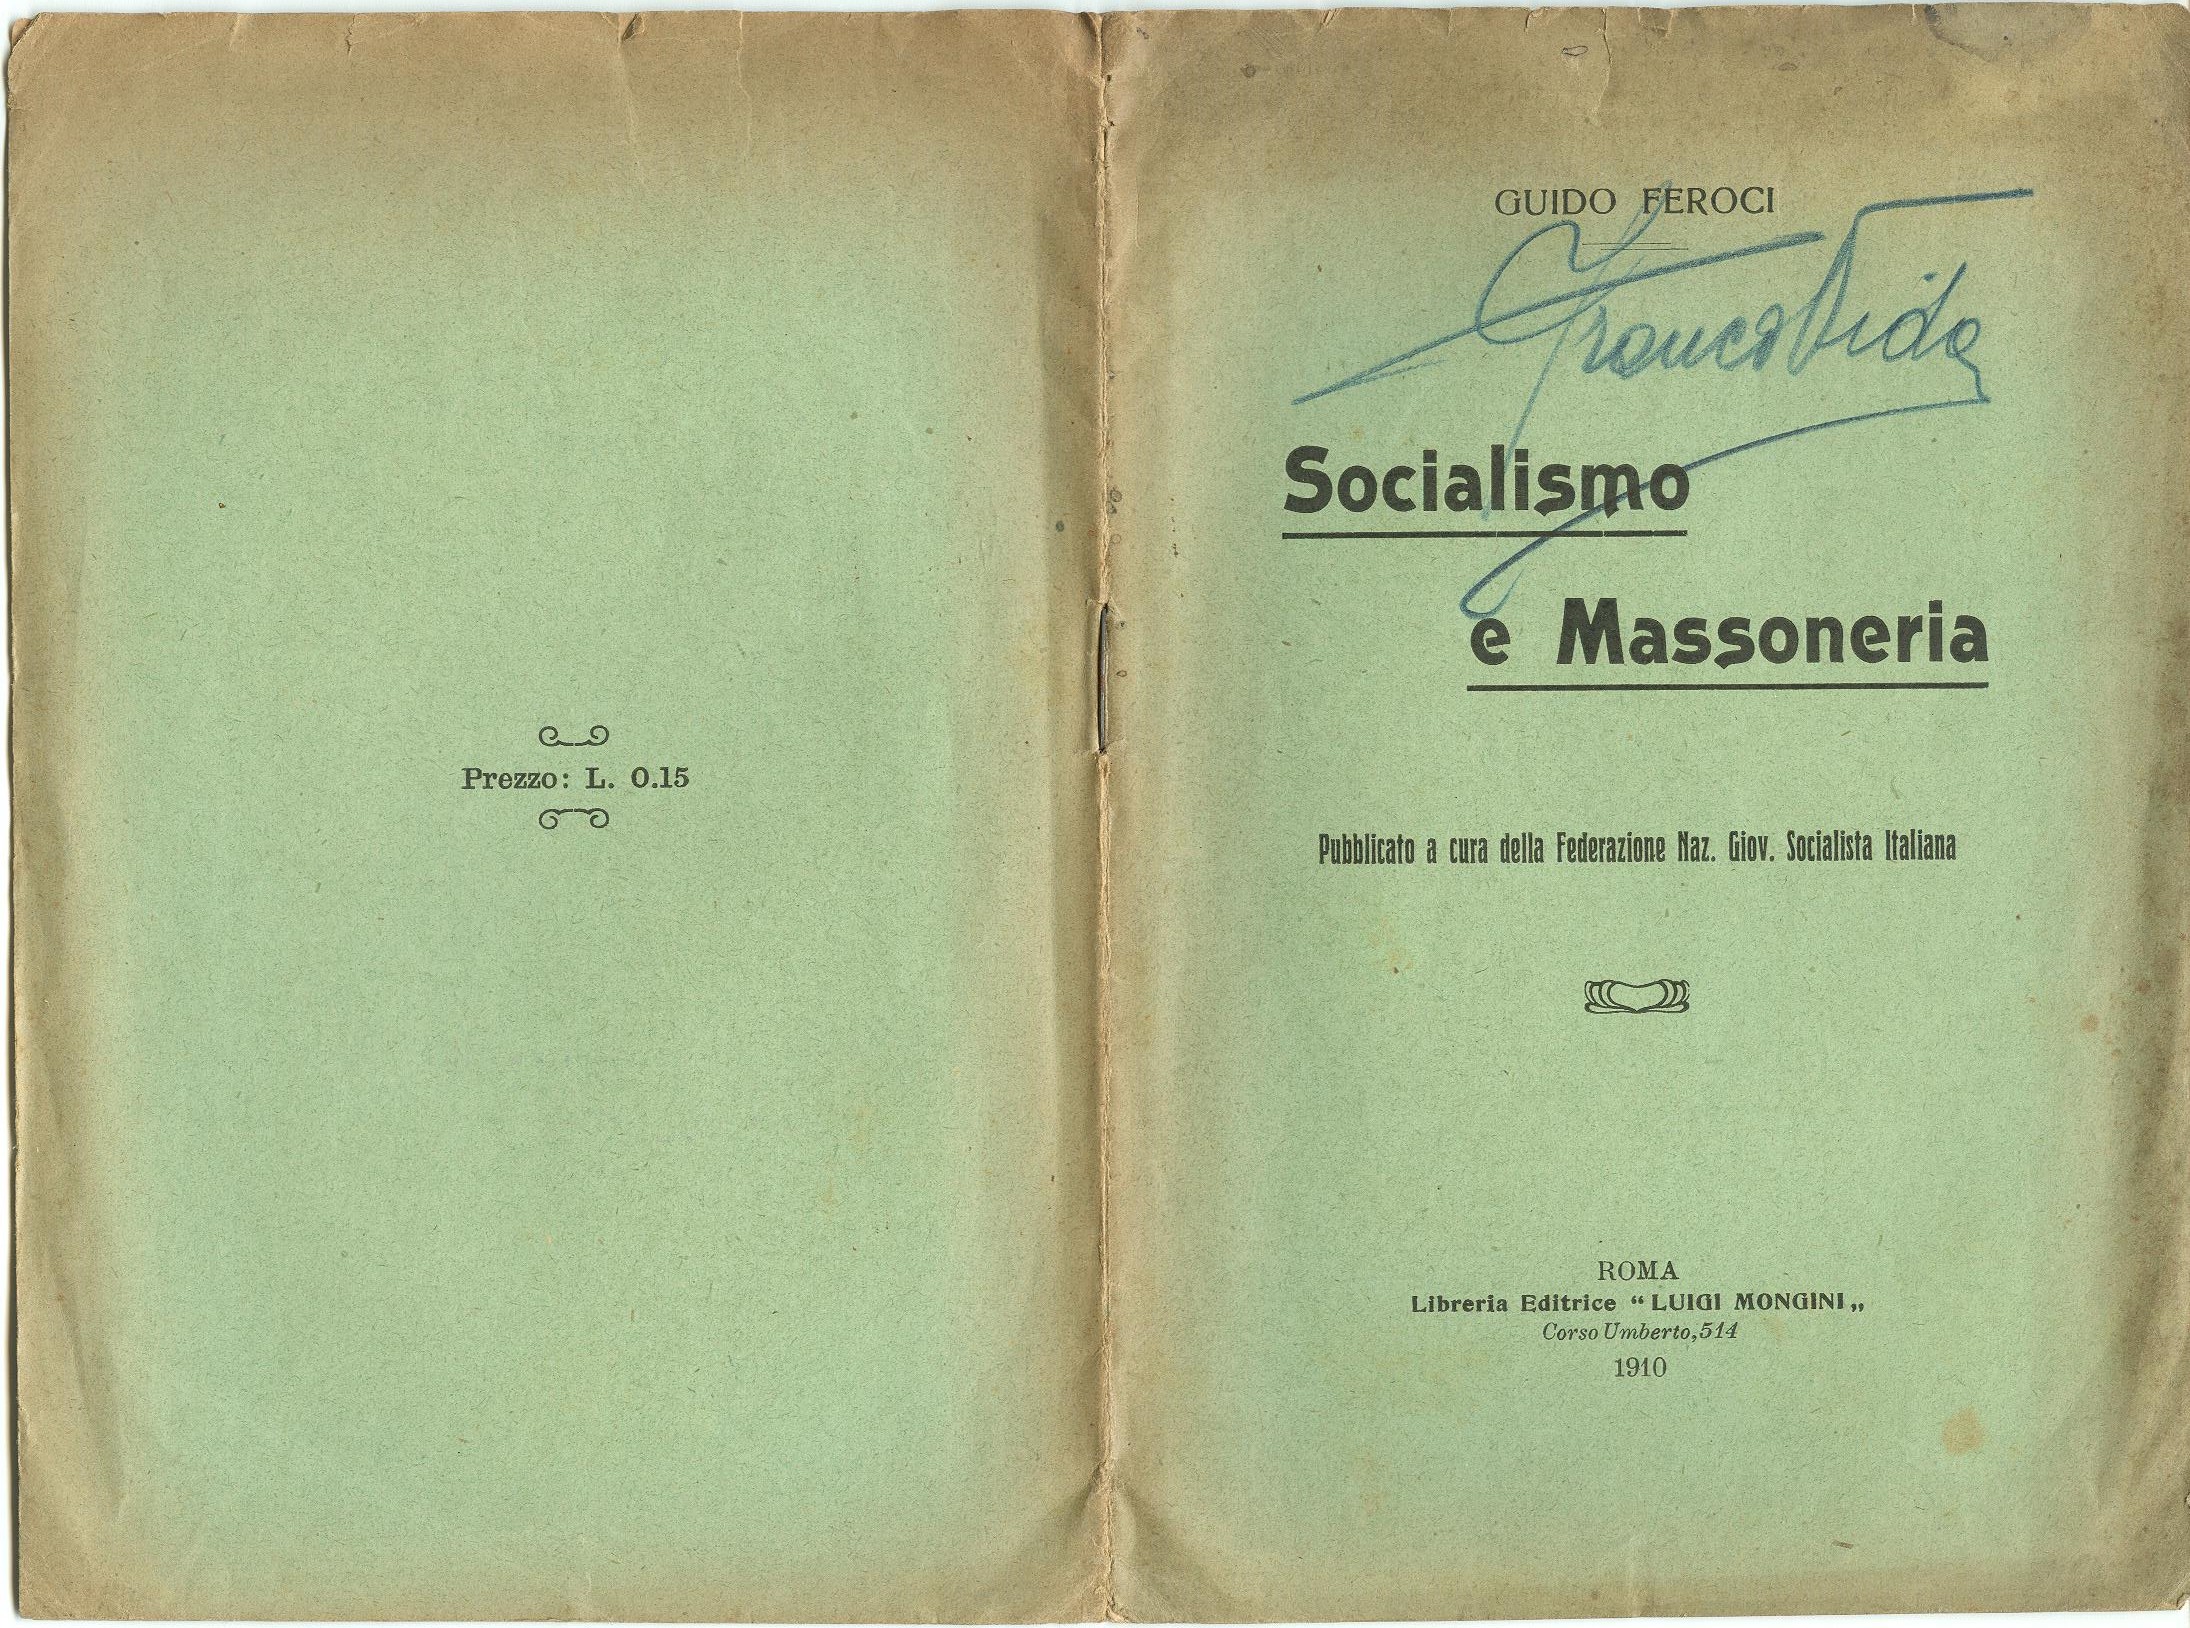 Guido Feroci, Socialismo e Massoneria (1910) - pag. 1